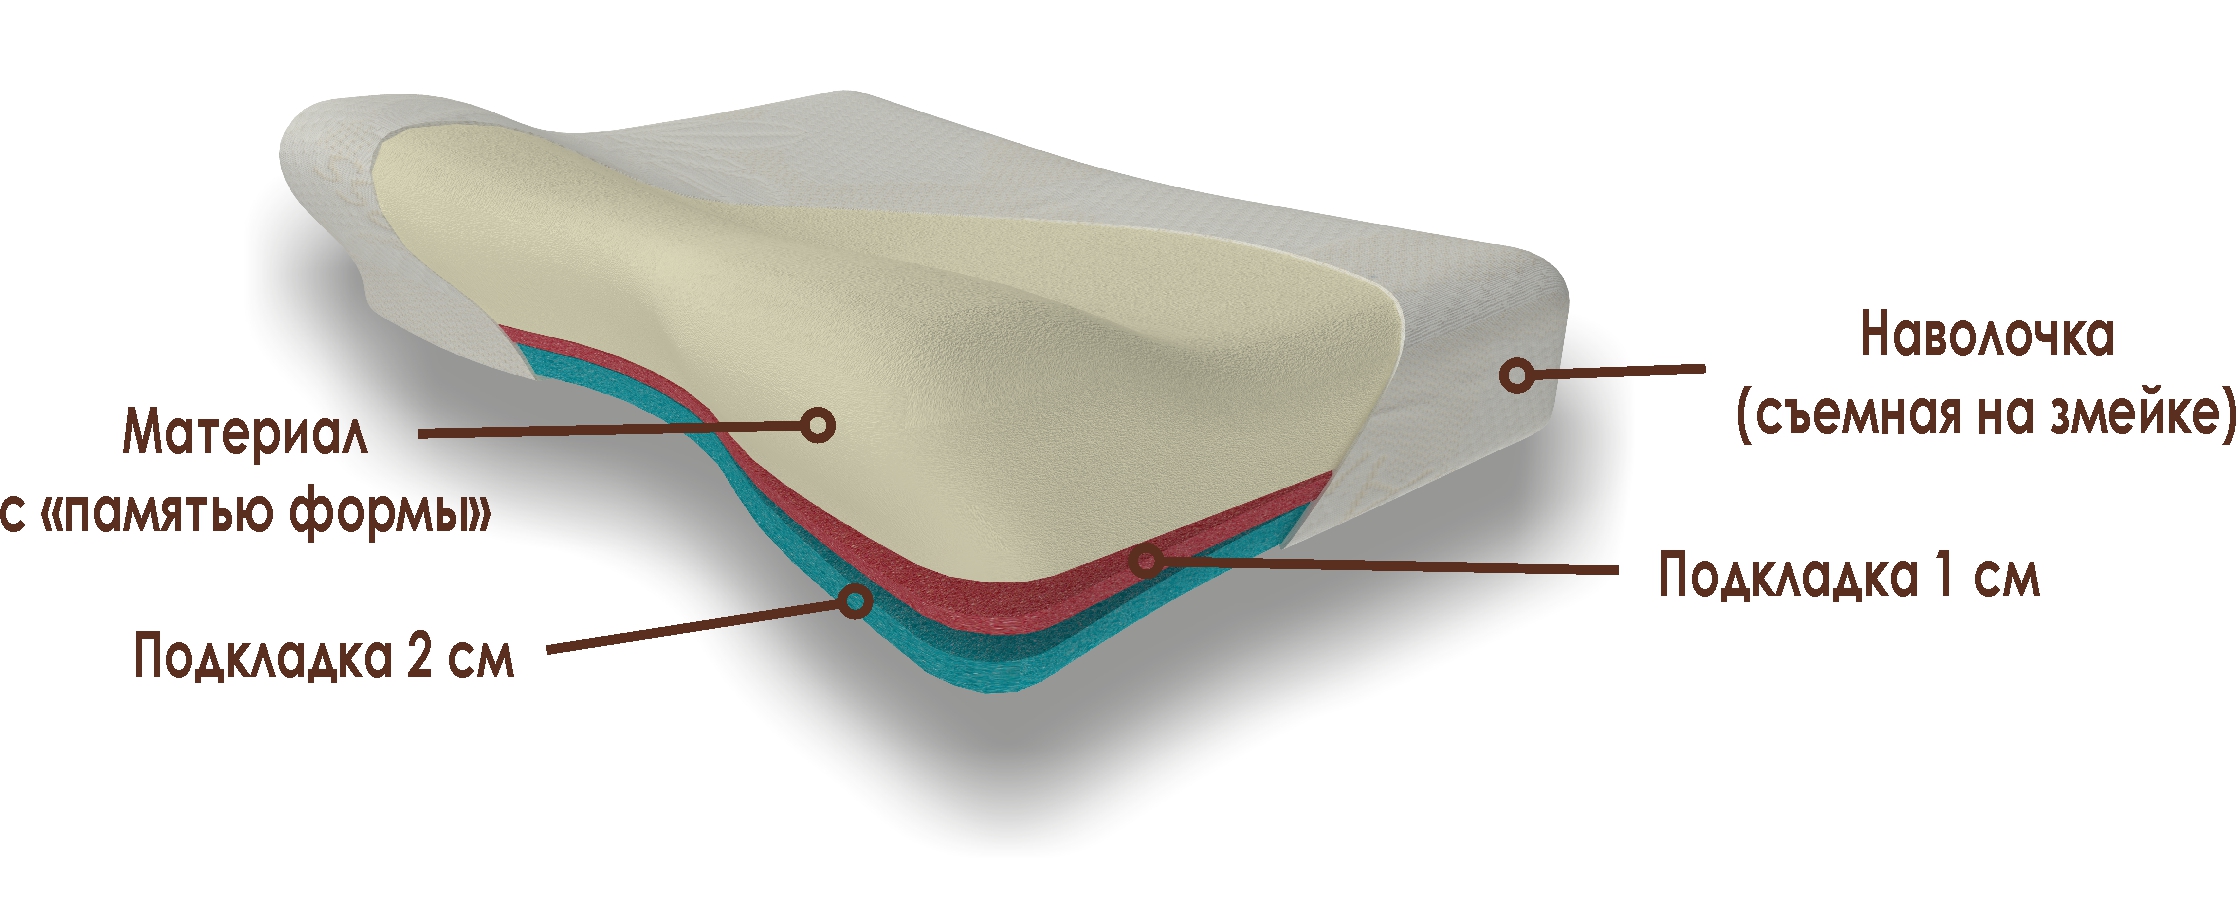 Материалы ортопедической подушки с выемкой под плечо и регулировкой по высоте Memory Foam Shoulder